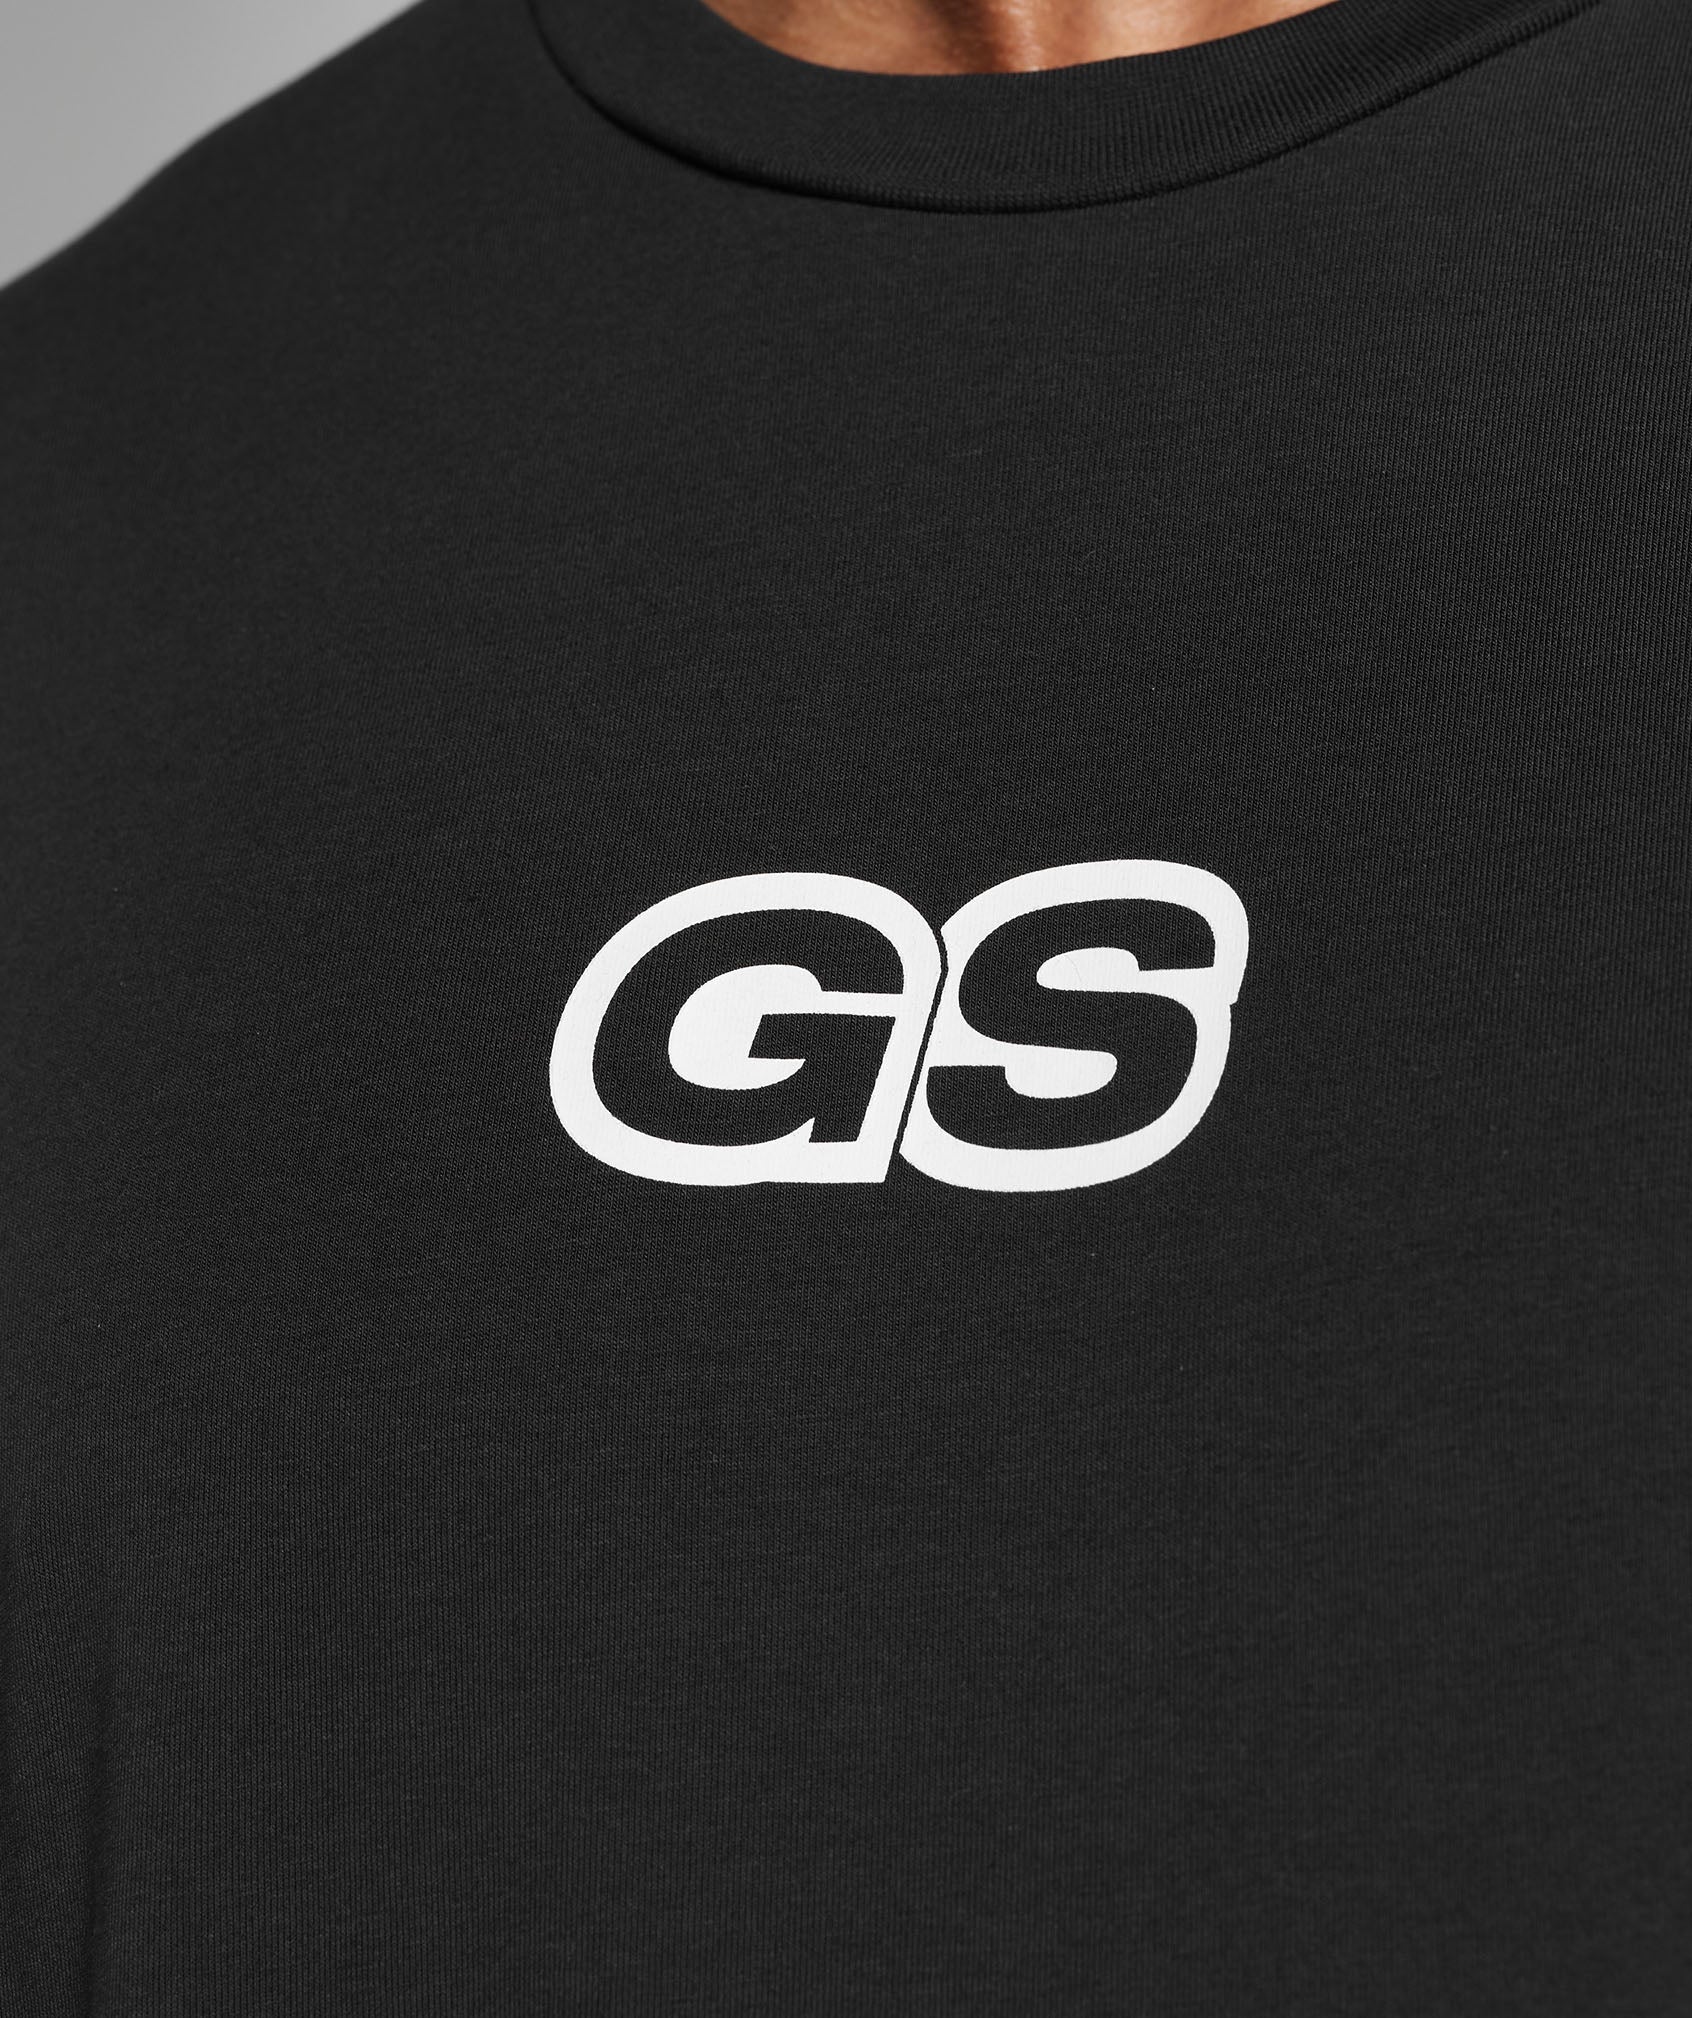 GMSHK Oversized T-Shirt in Black